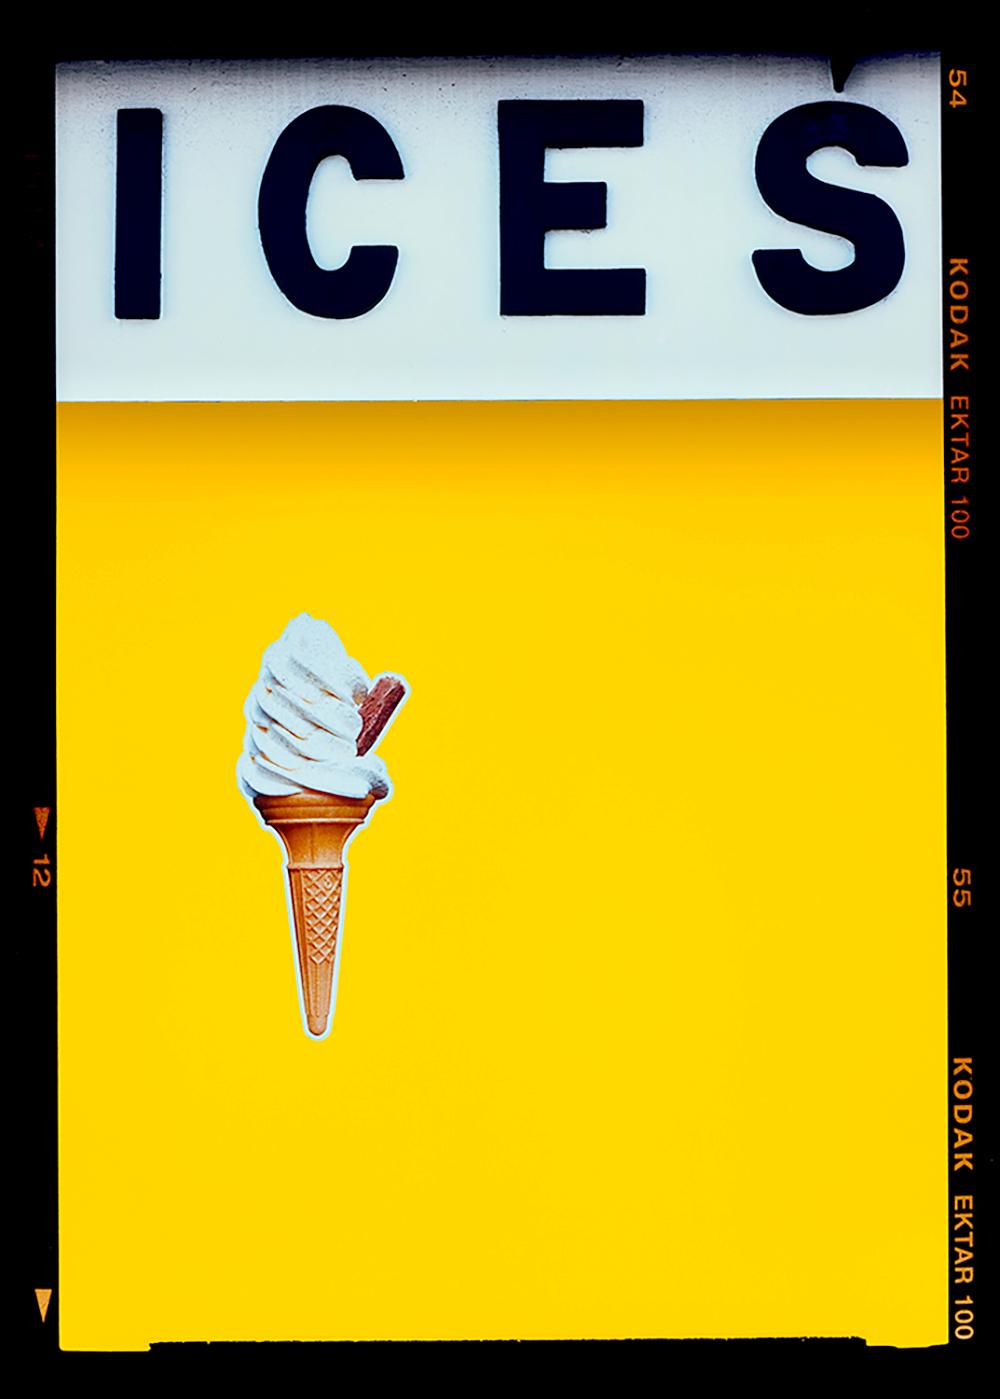 Richard Heeps Print – Ices (Gelbe), Bexhill-on-Sea – britische Meeresfotografie